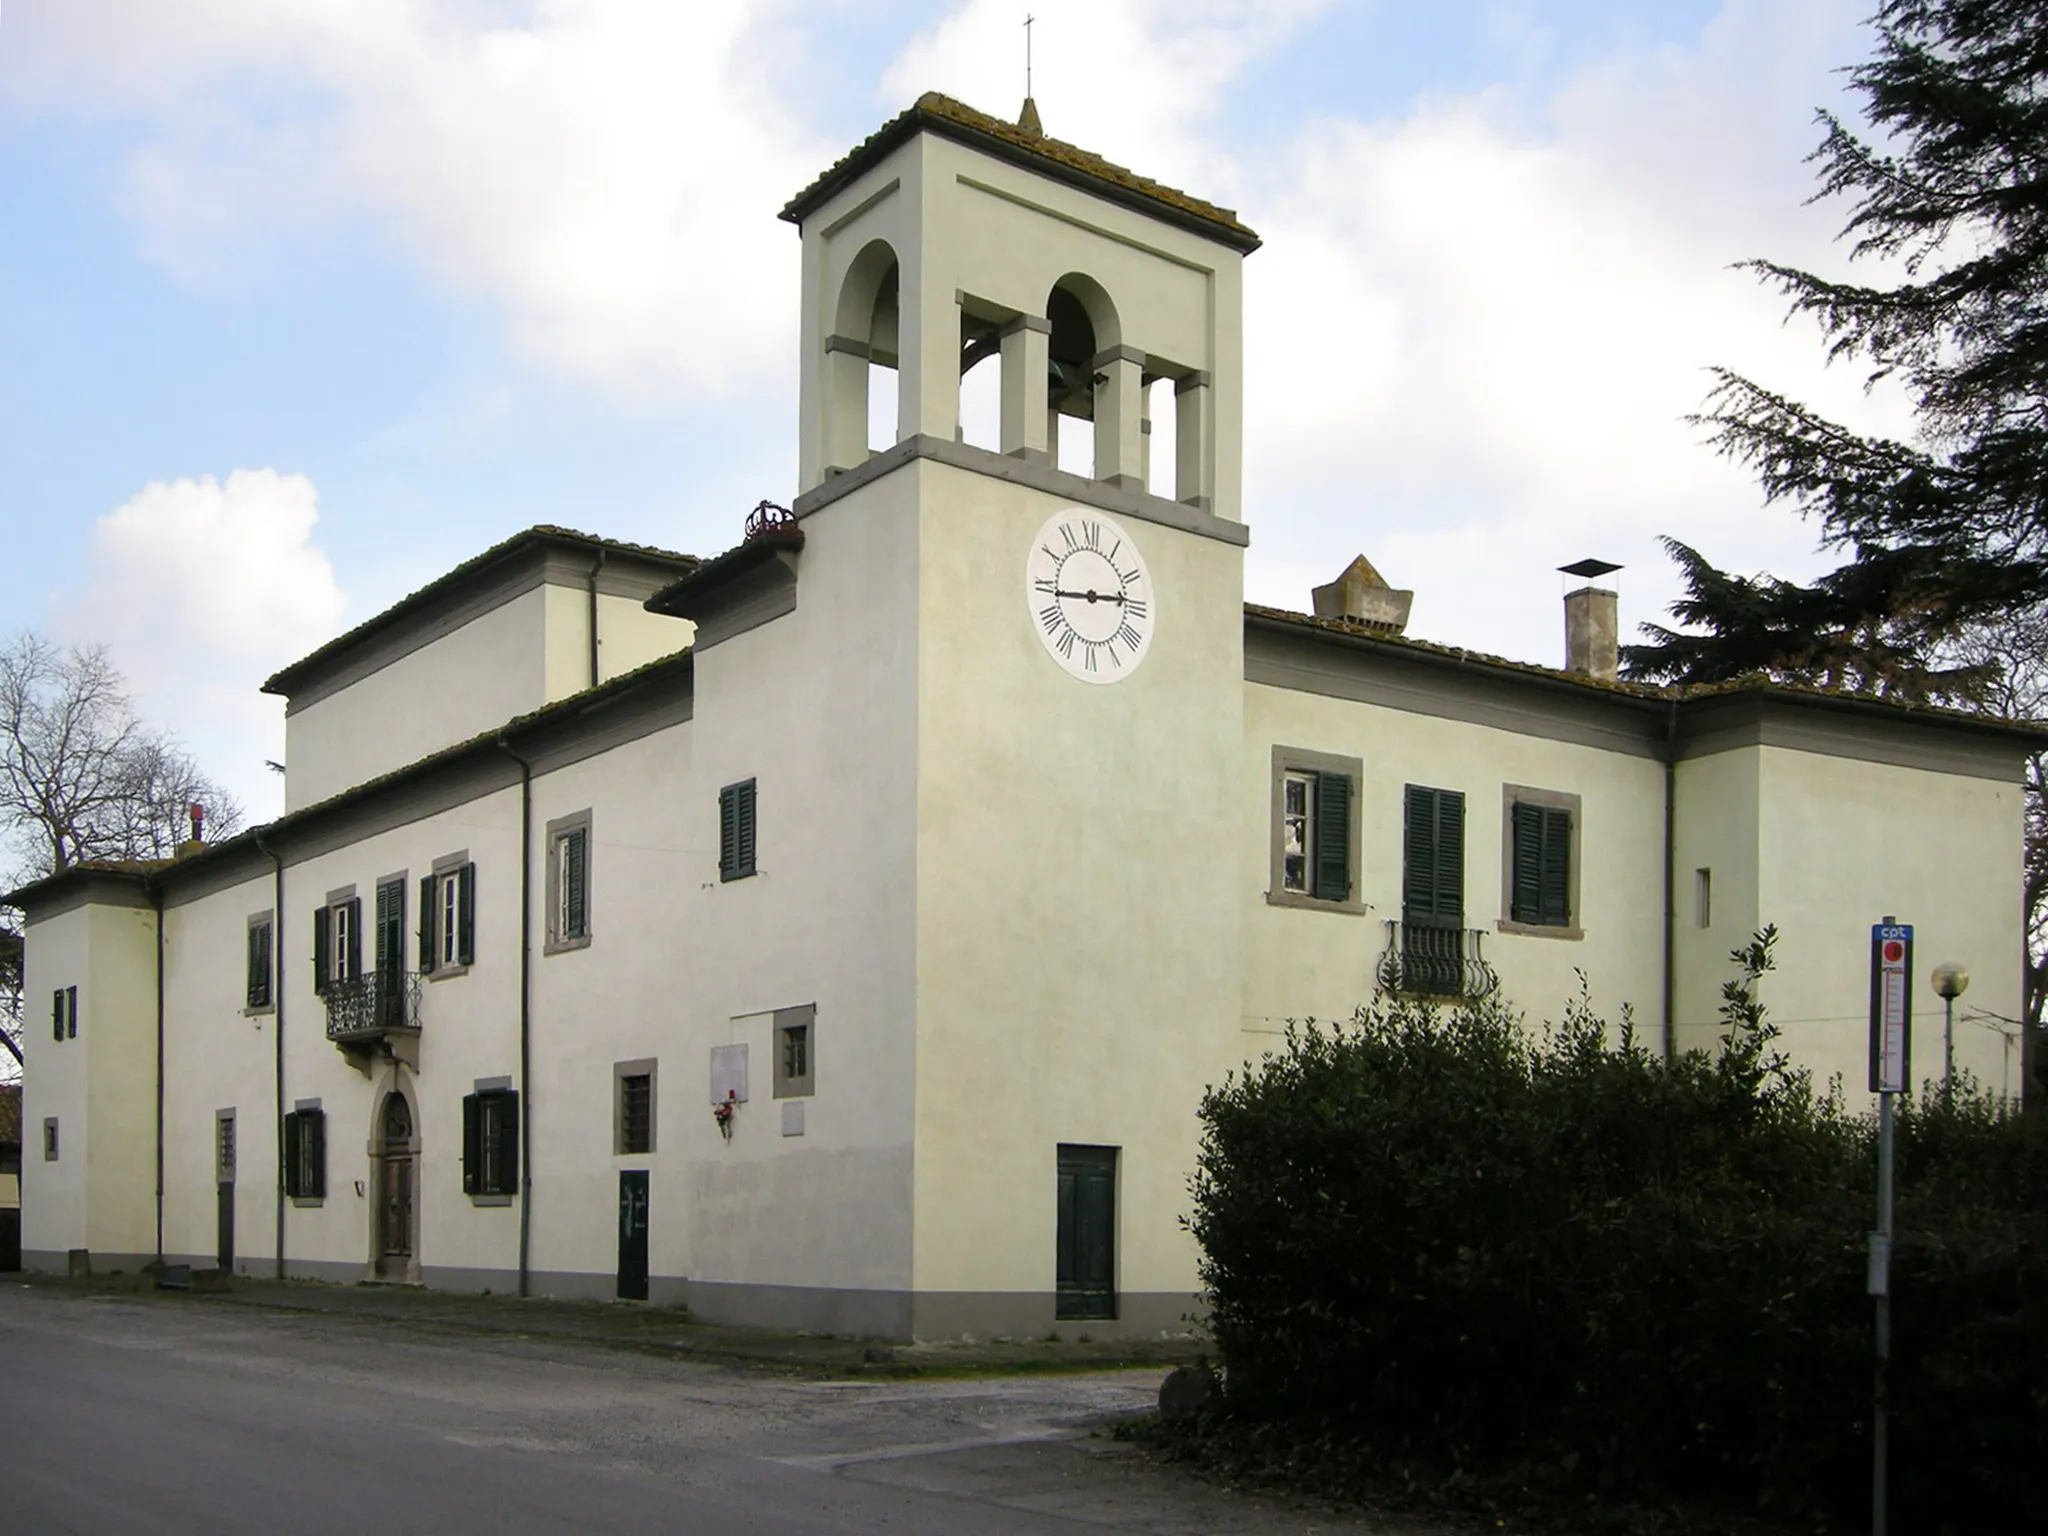 Photo showing: Villa di coltano